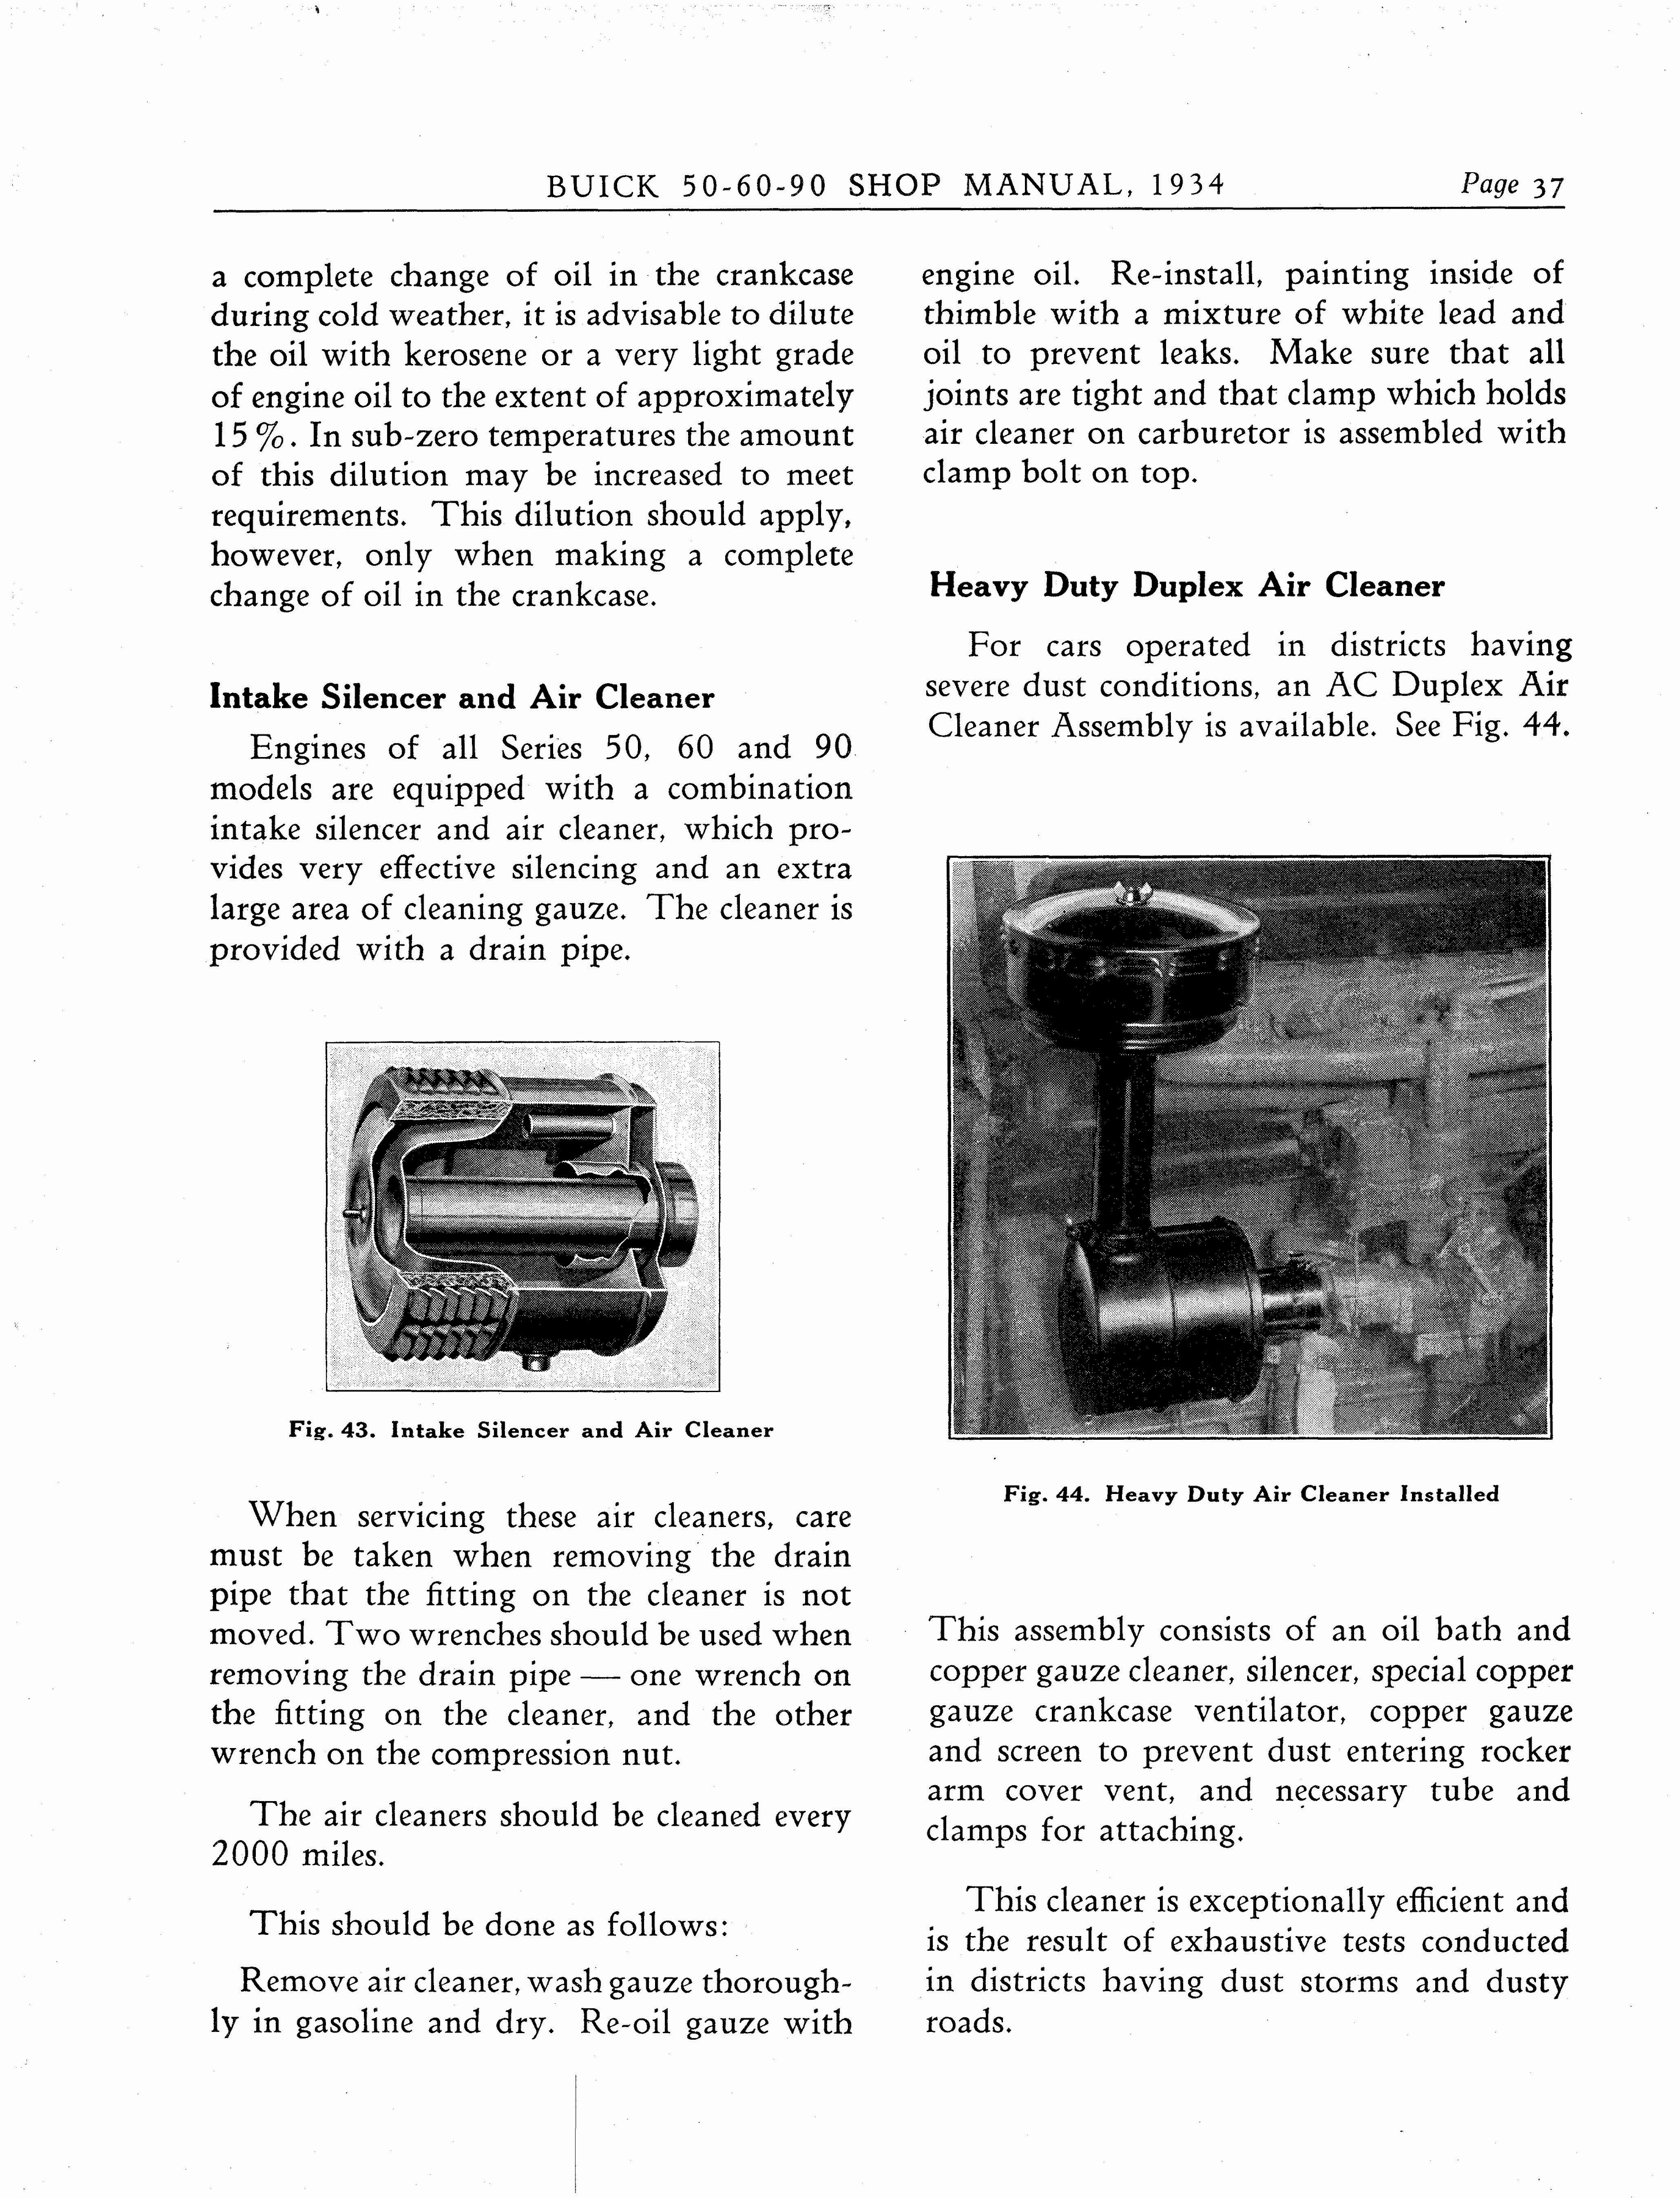 n_1934 Buick Series 50-60-90 Shop Manual_Page_038.jpg